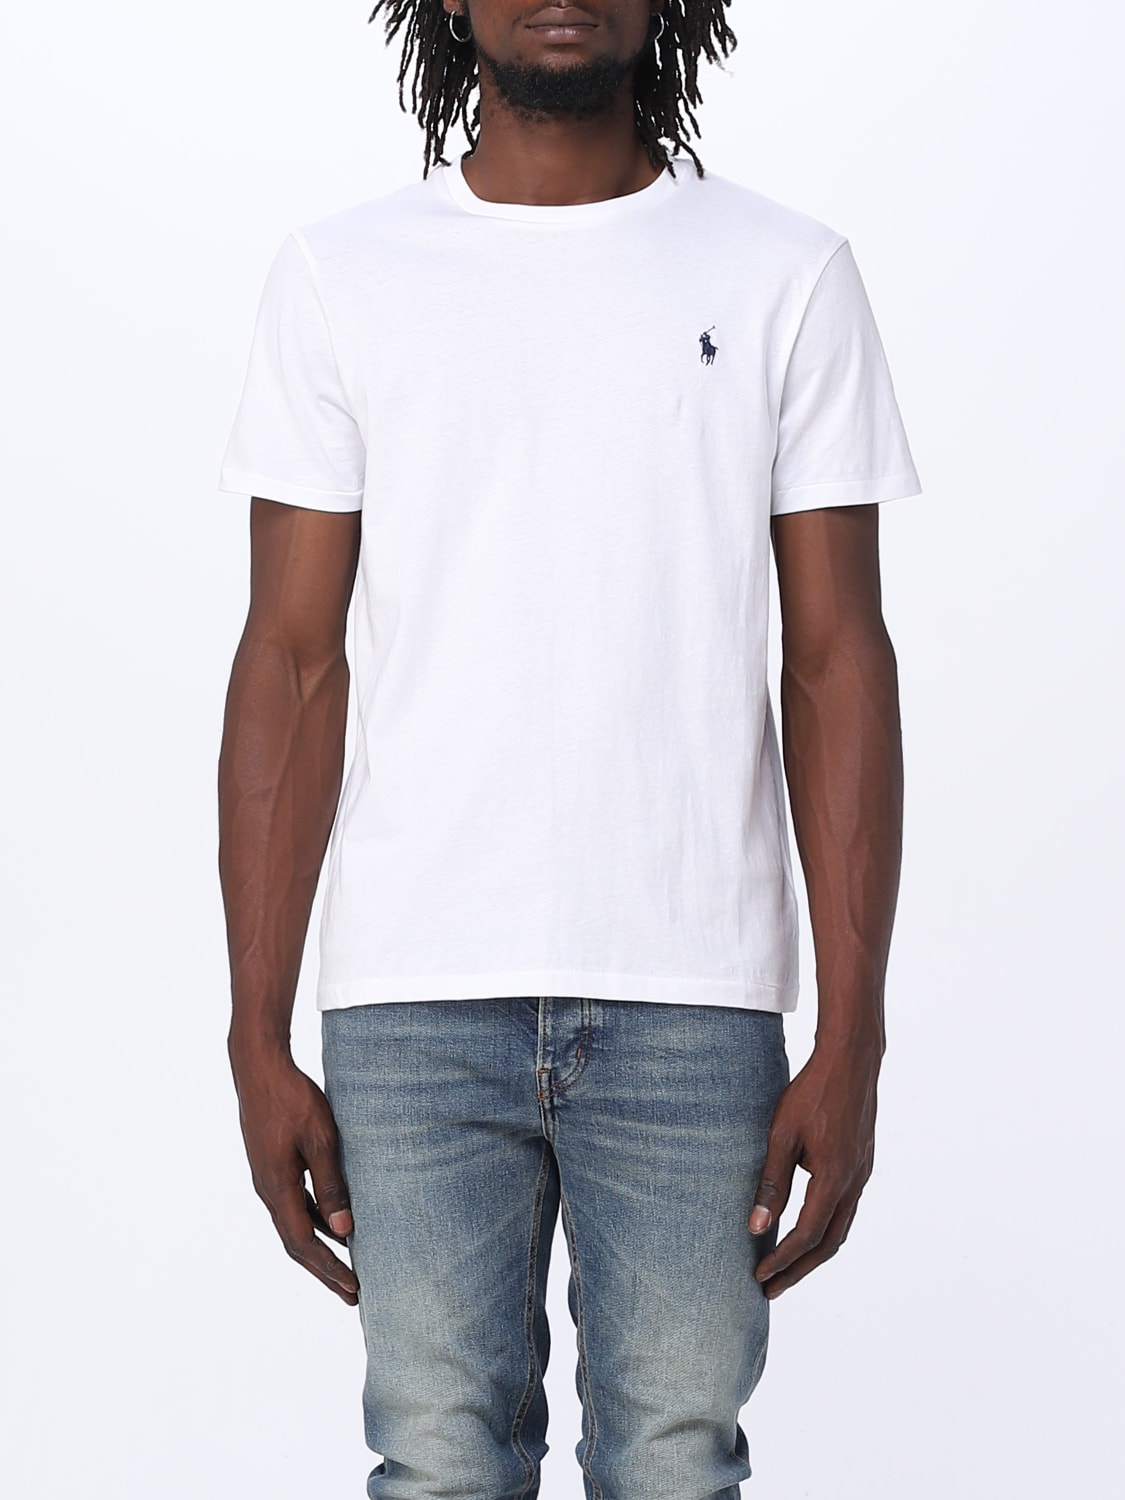 Ralph Lauren Logo T Shirt WhiteRalph Lauren Logo T Shirt White - Male - Small